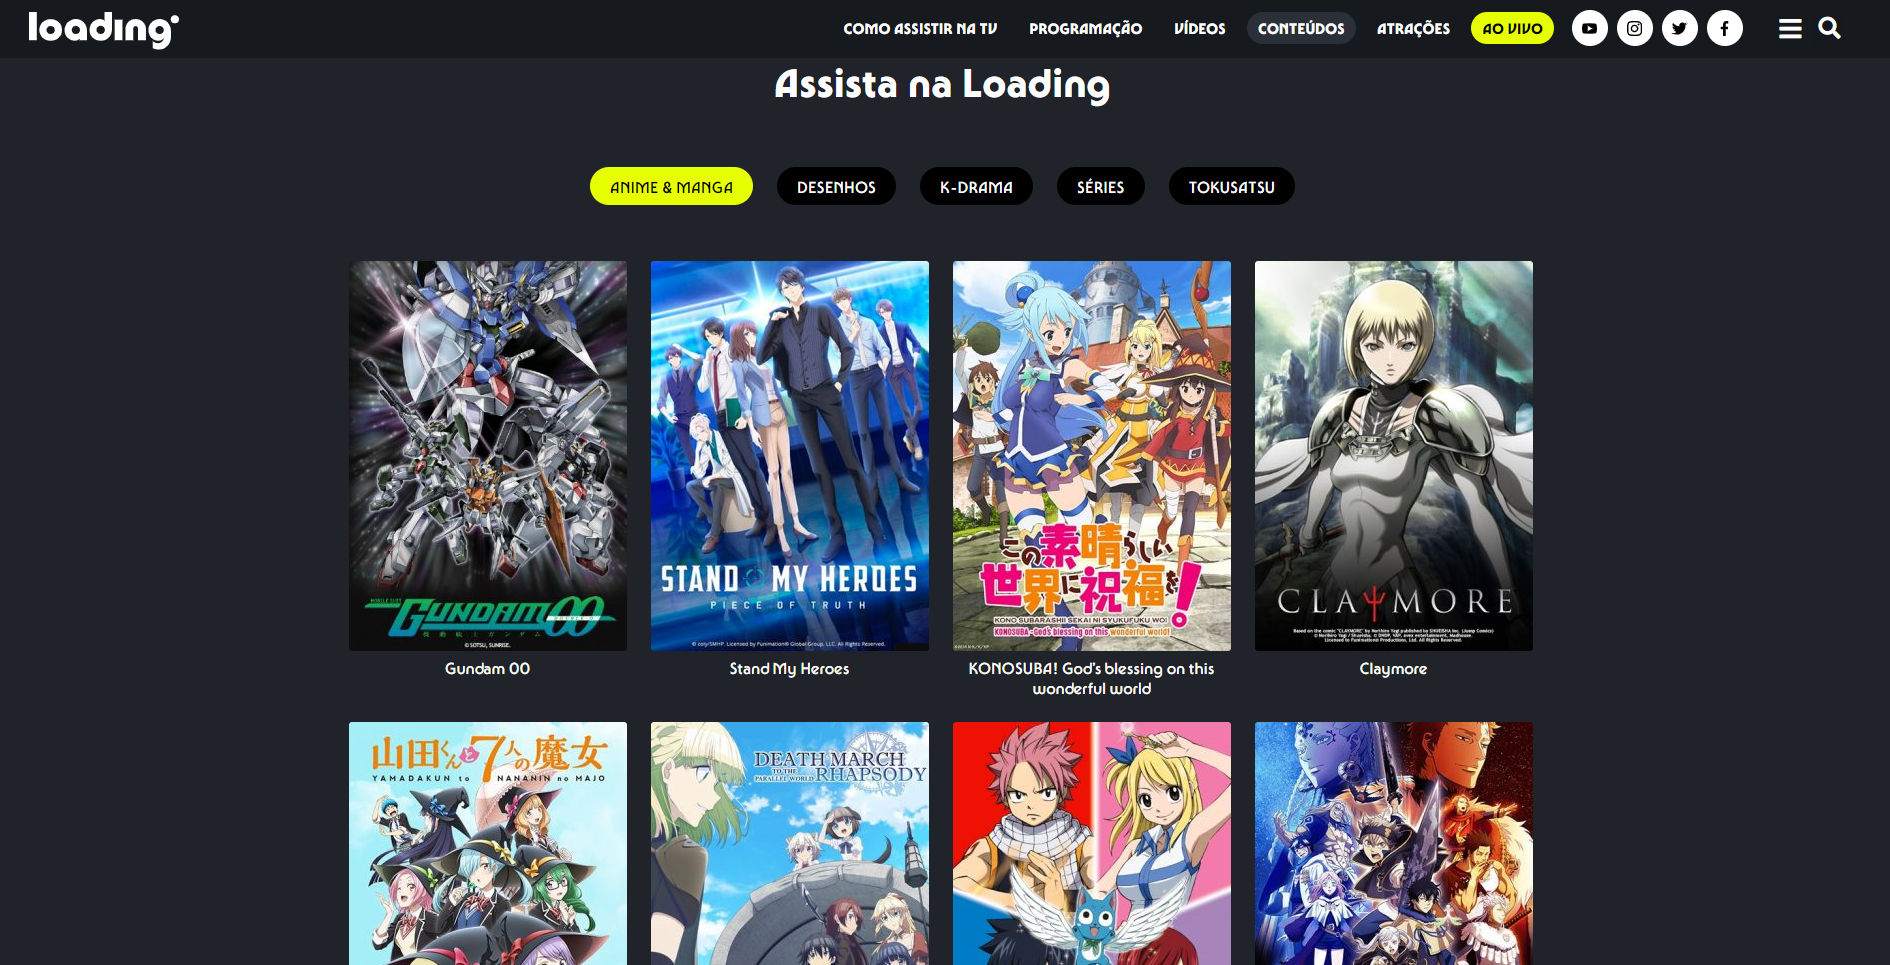 Garotas Geeks - 5 sites e serviços para assistir anime legalmente